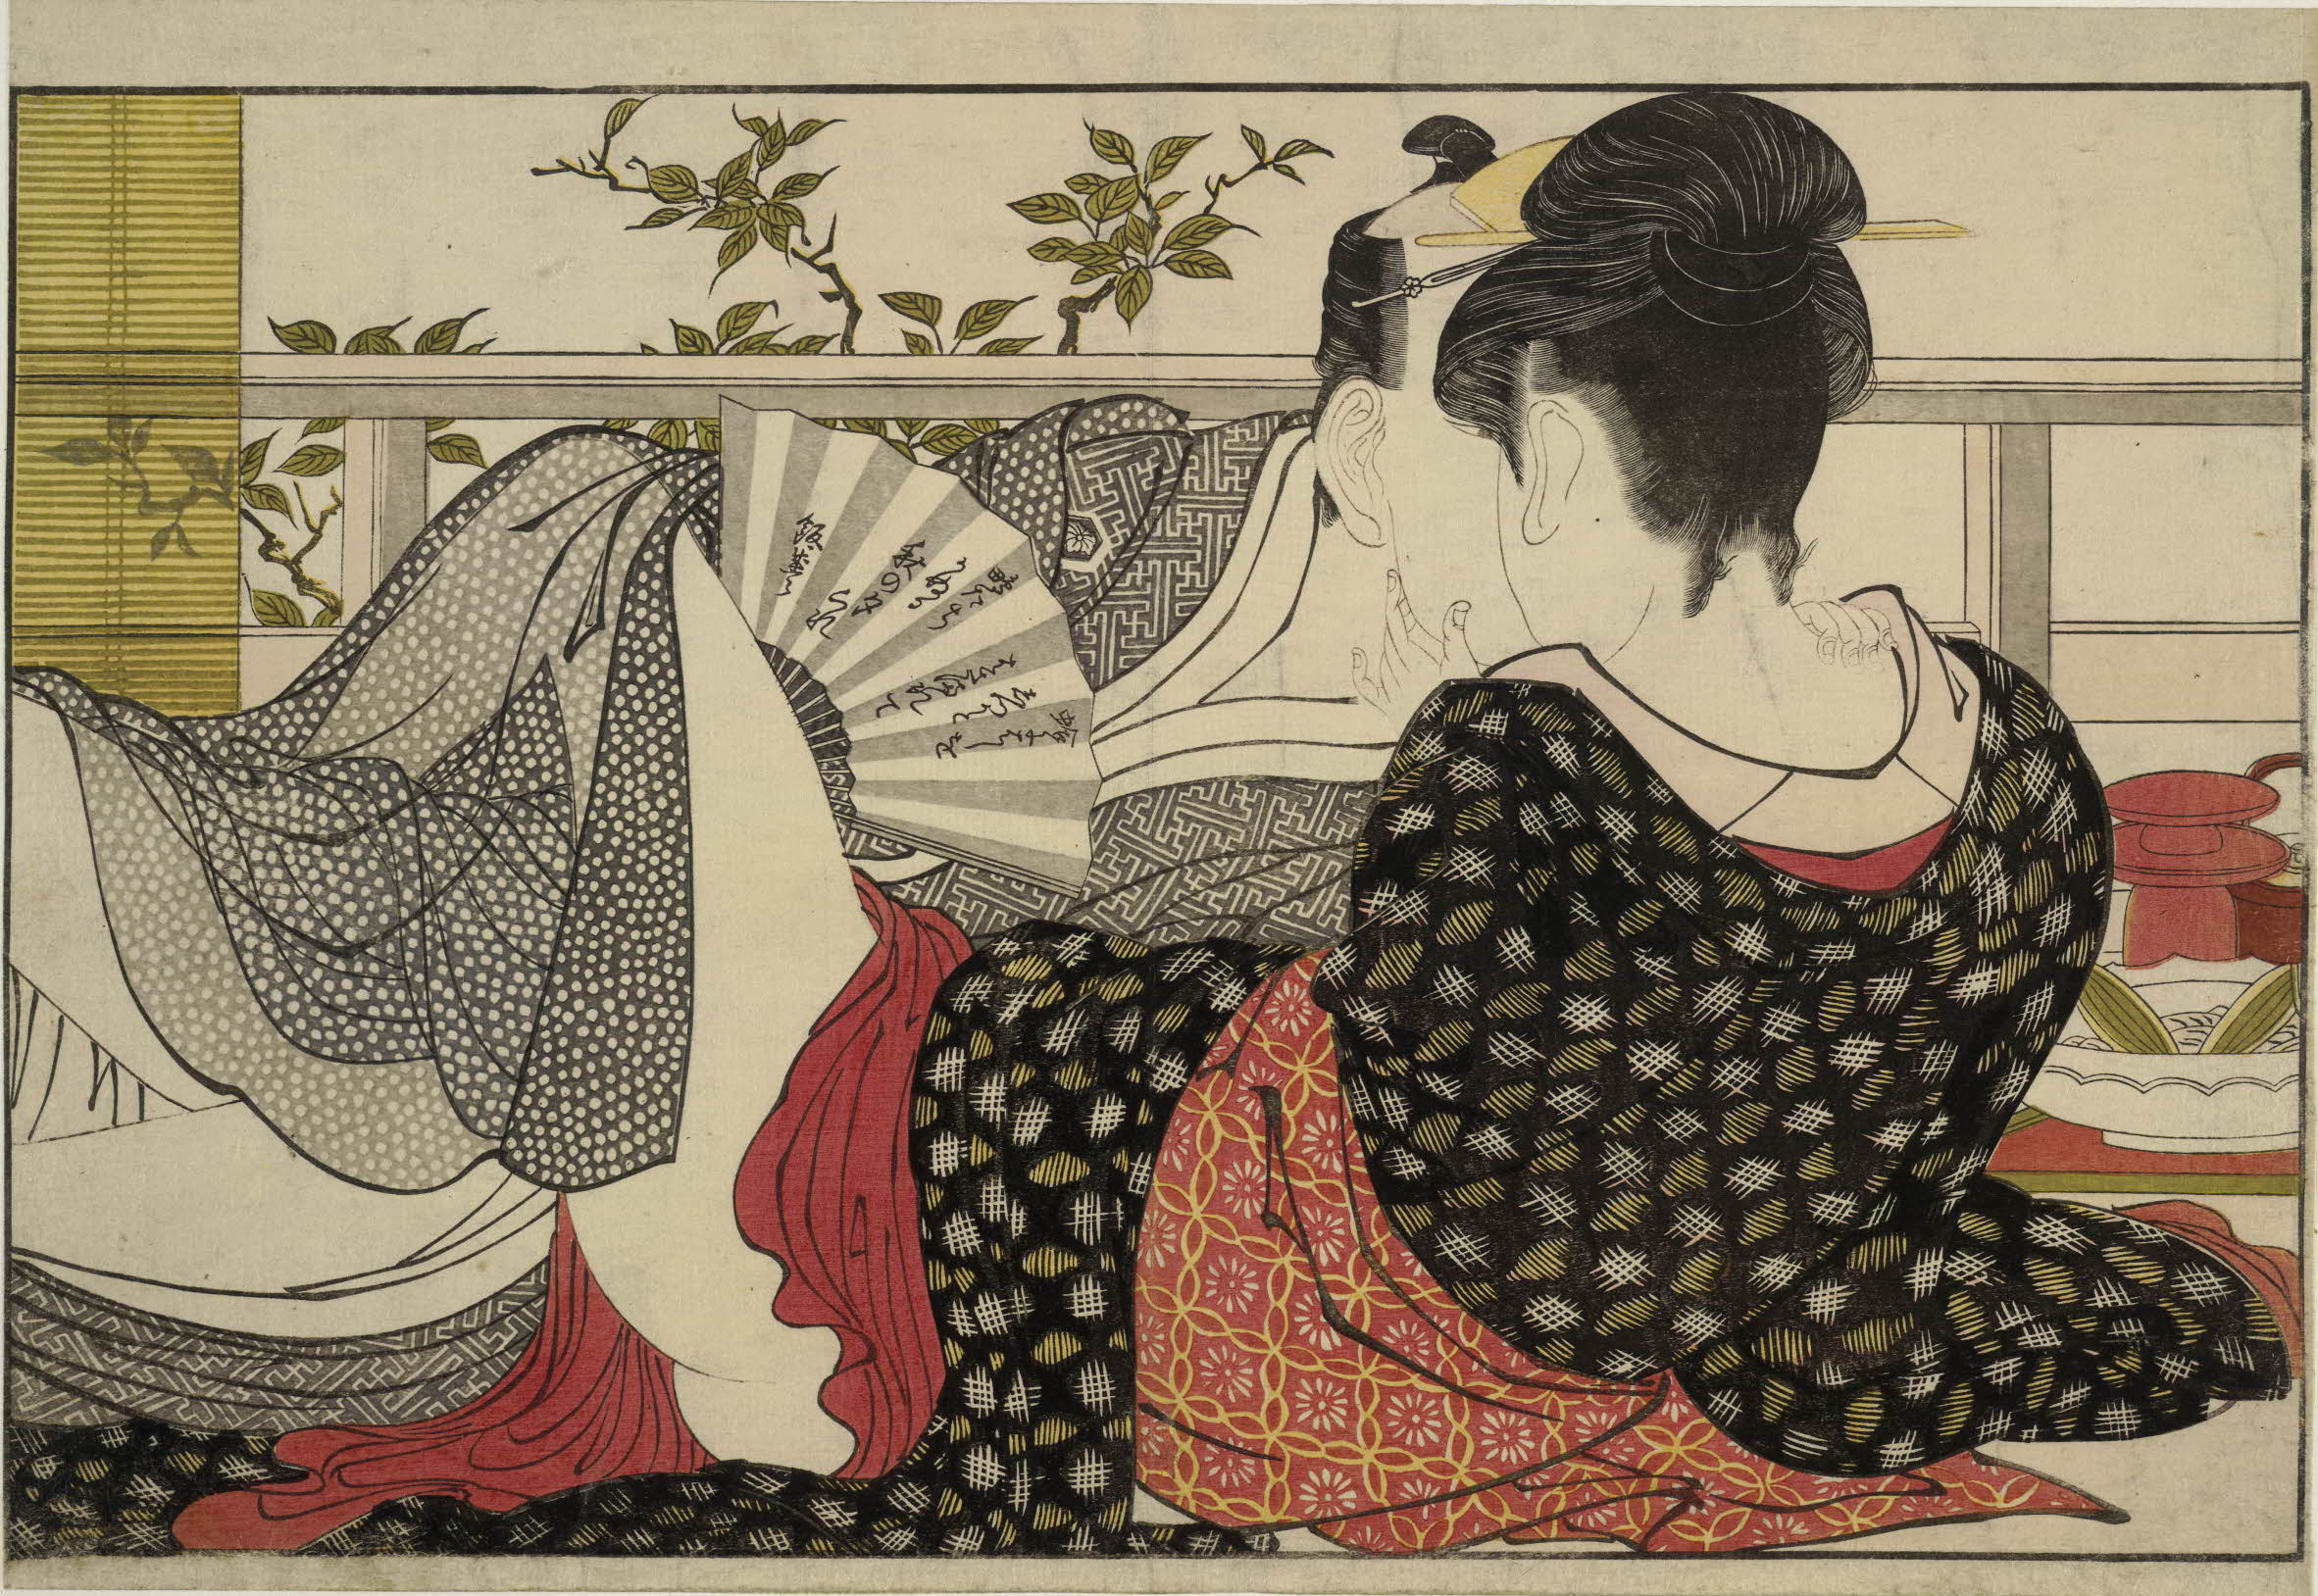 Utamakura (Gedicht van het kussen) by Kitagawa Utamaro - 1788 - 254 x 369 mm 